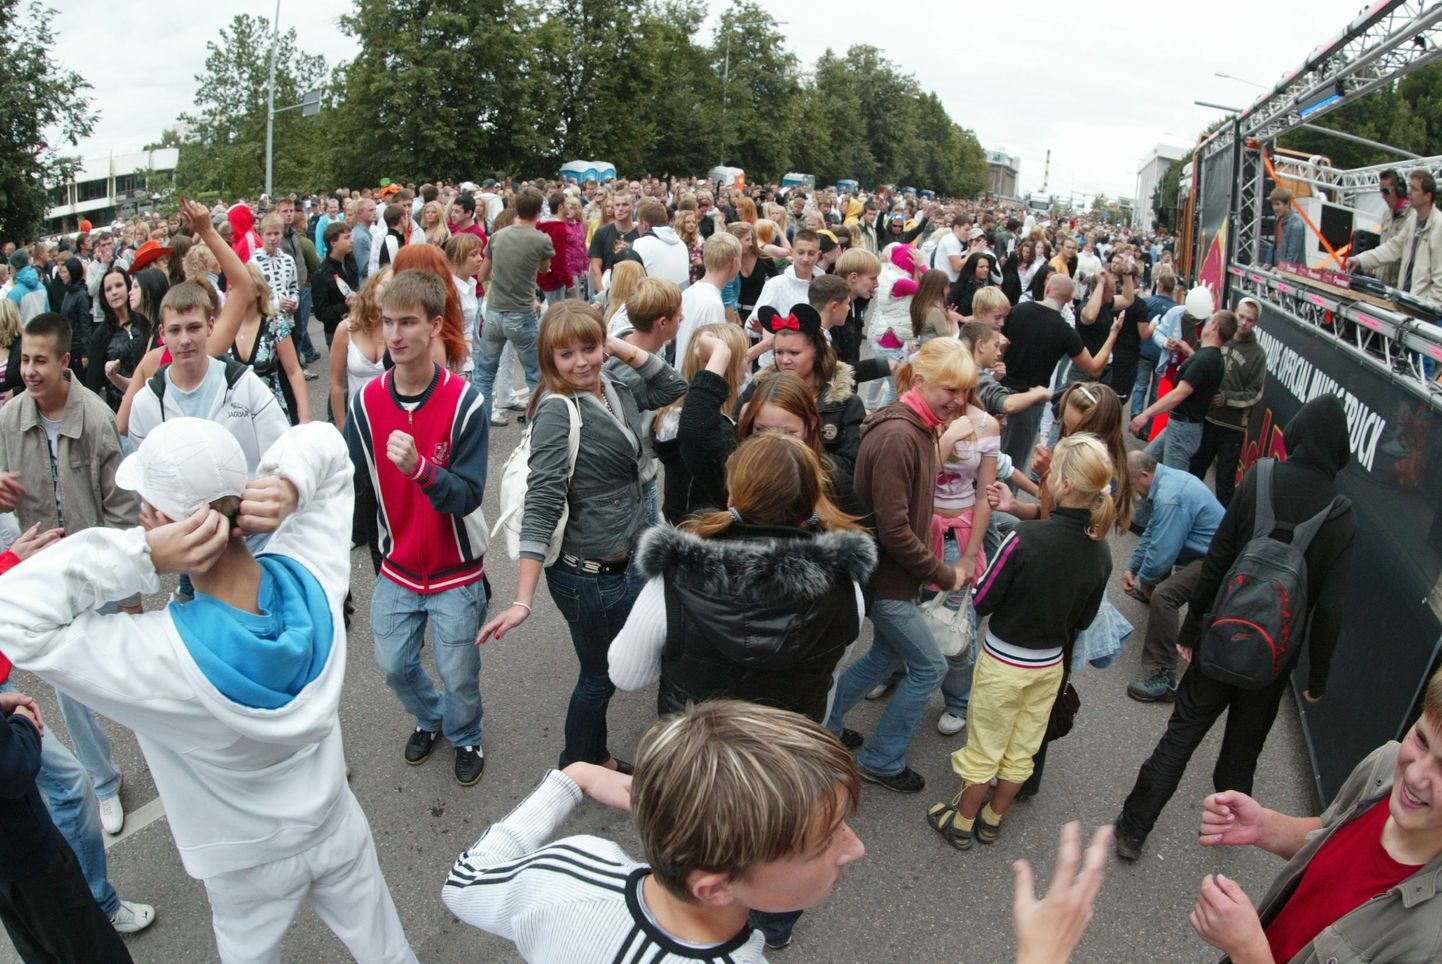 Möödunud aastal peeti Freedom Parade
taas oma algses toimumispaigas Vabaduse puiesteel Tartu kesklinnas.